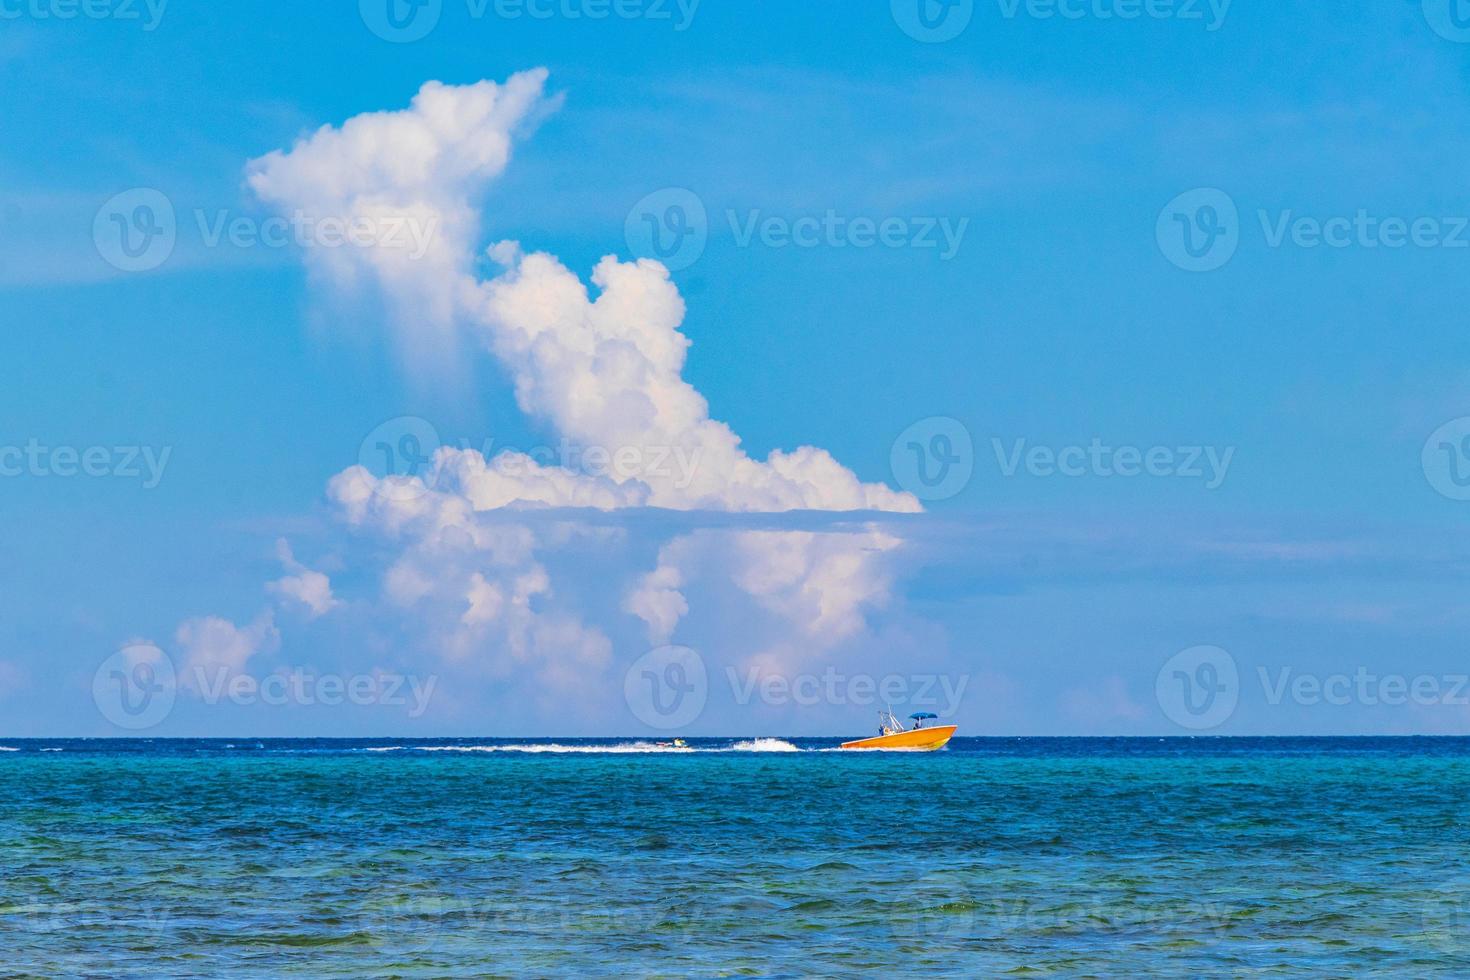 bateaux yachts navire jetée plage à playa del carmen mexique. photo